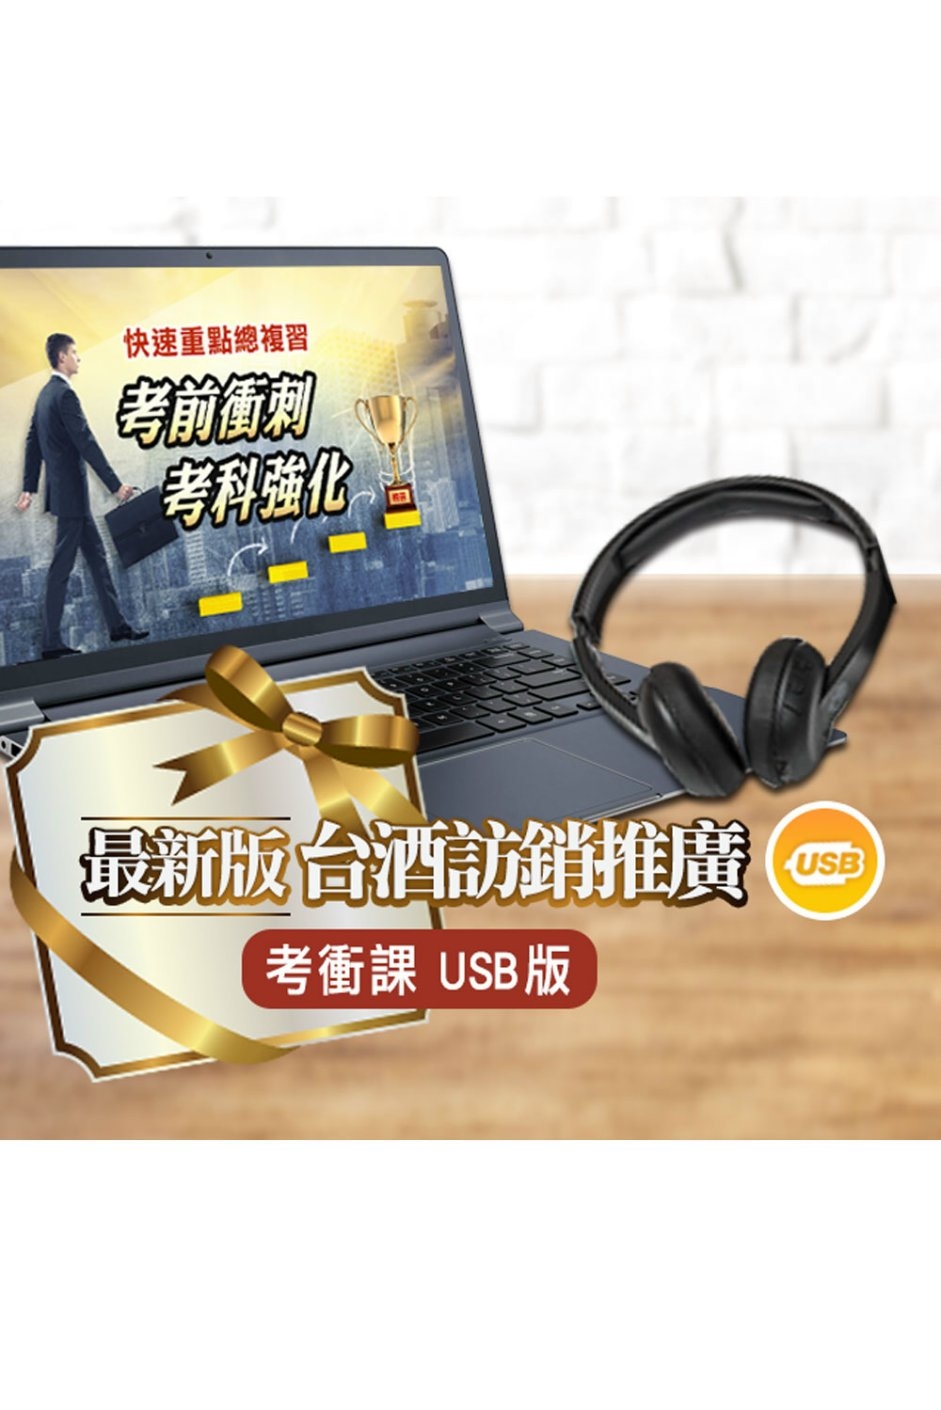 台灣菸酒從業評價職位人員[訪銷推廣]考前衝刺課(USB隨身碟版4堂12小時)(D538E22-1)